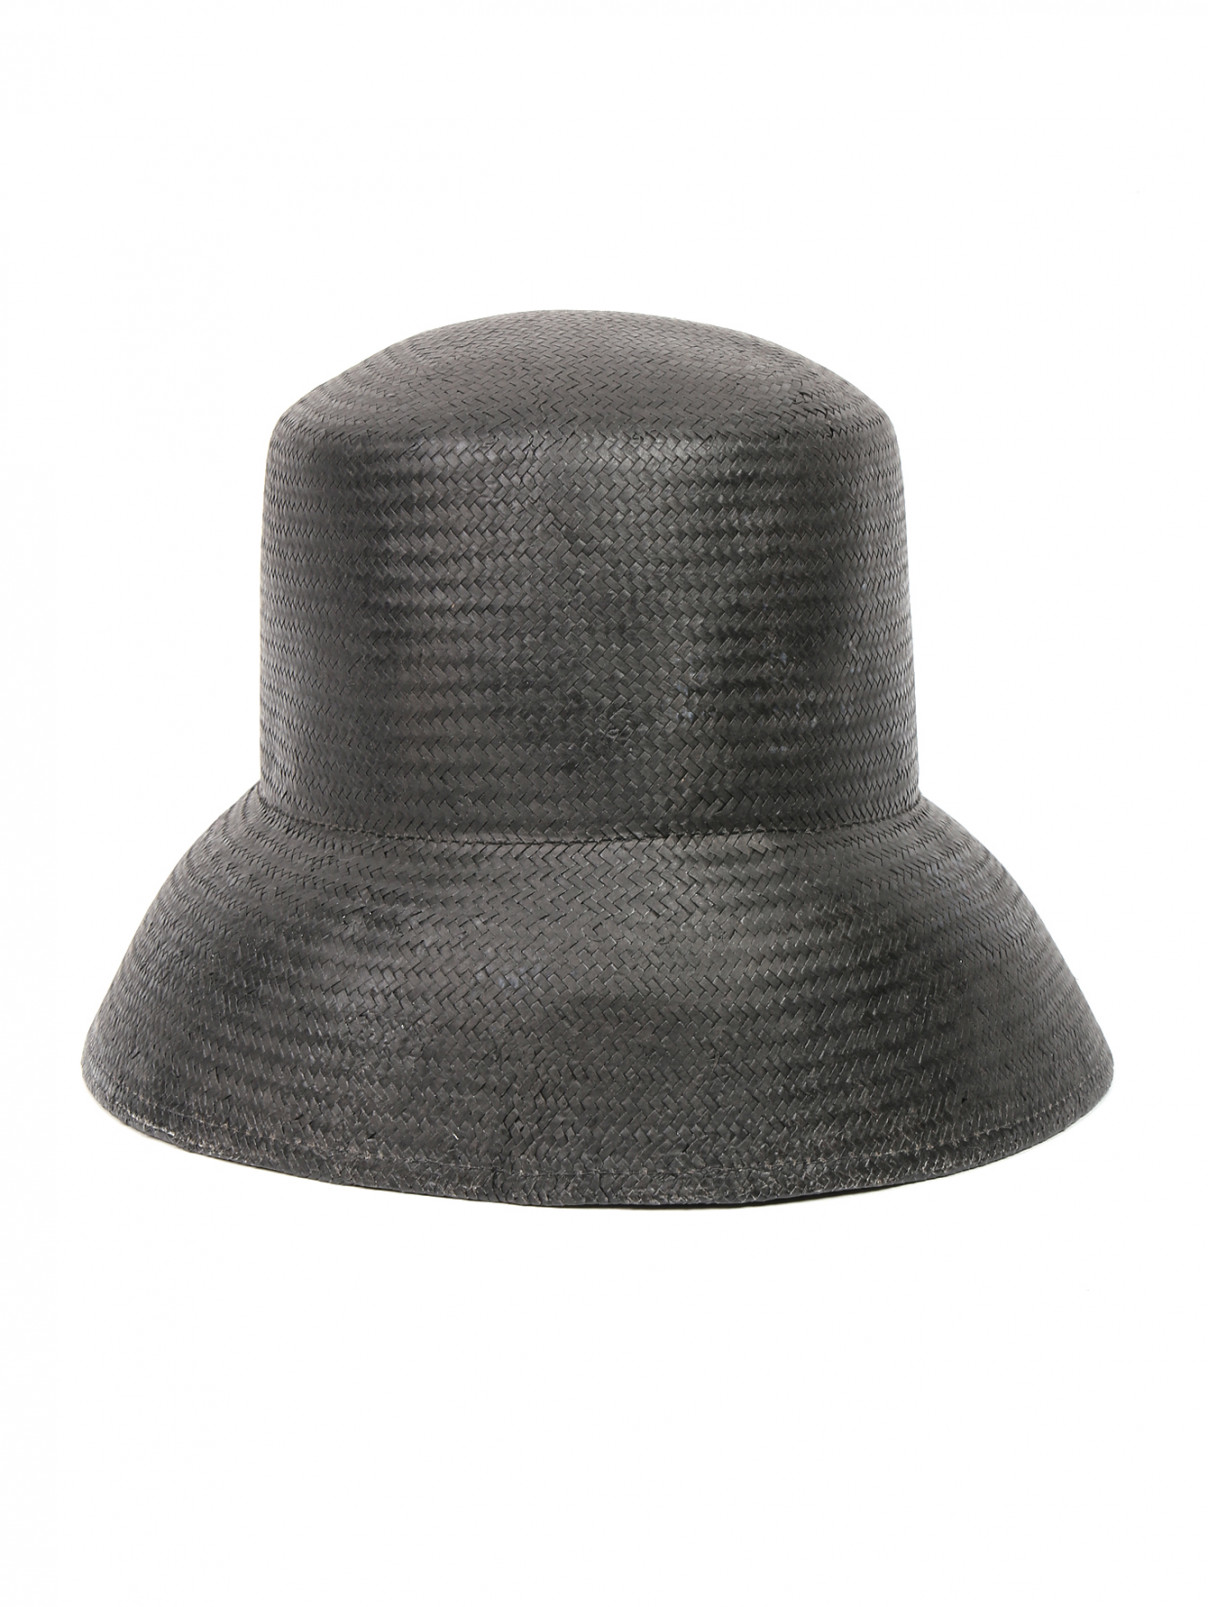 Шляпа из соломы Max Mara  –  Общий вид  – Цвет:  Коричневый